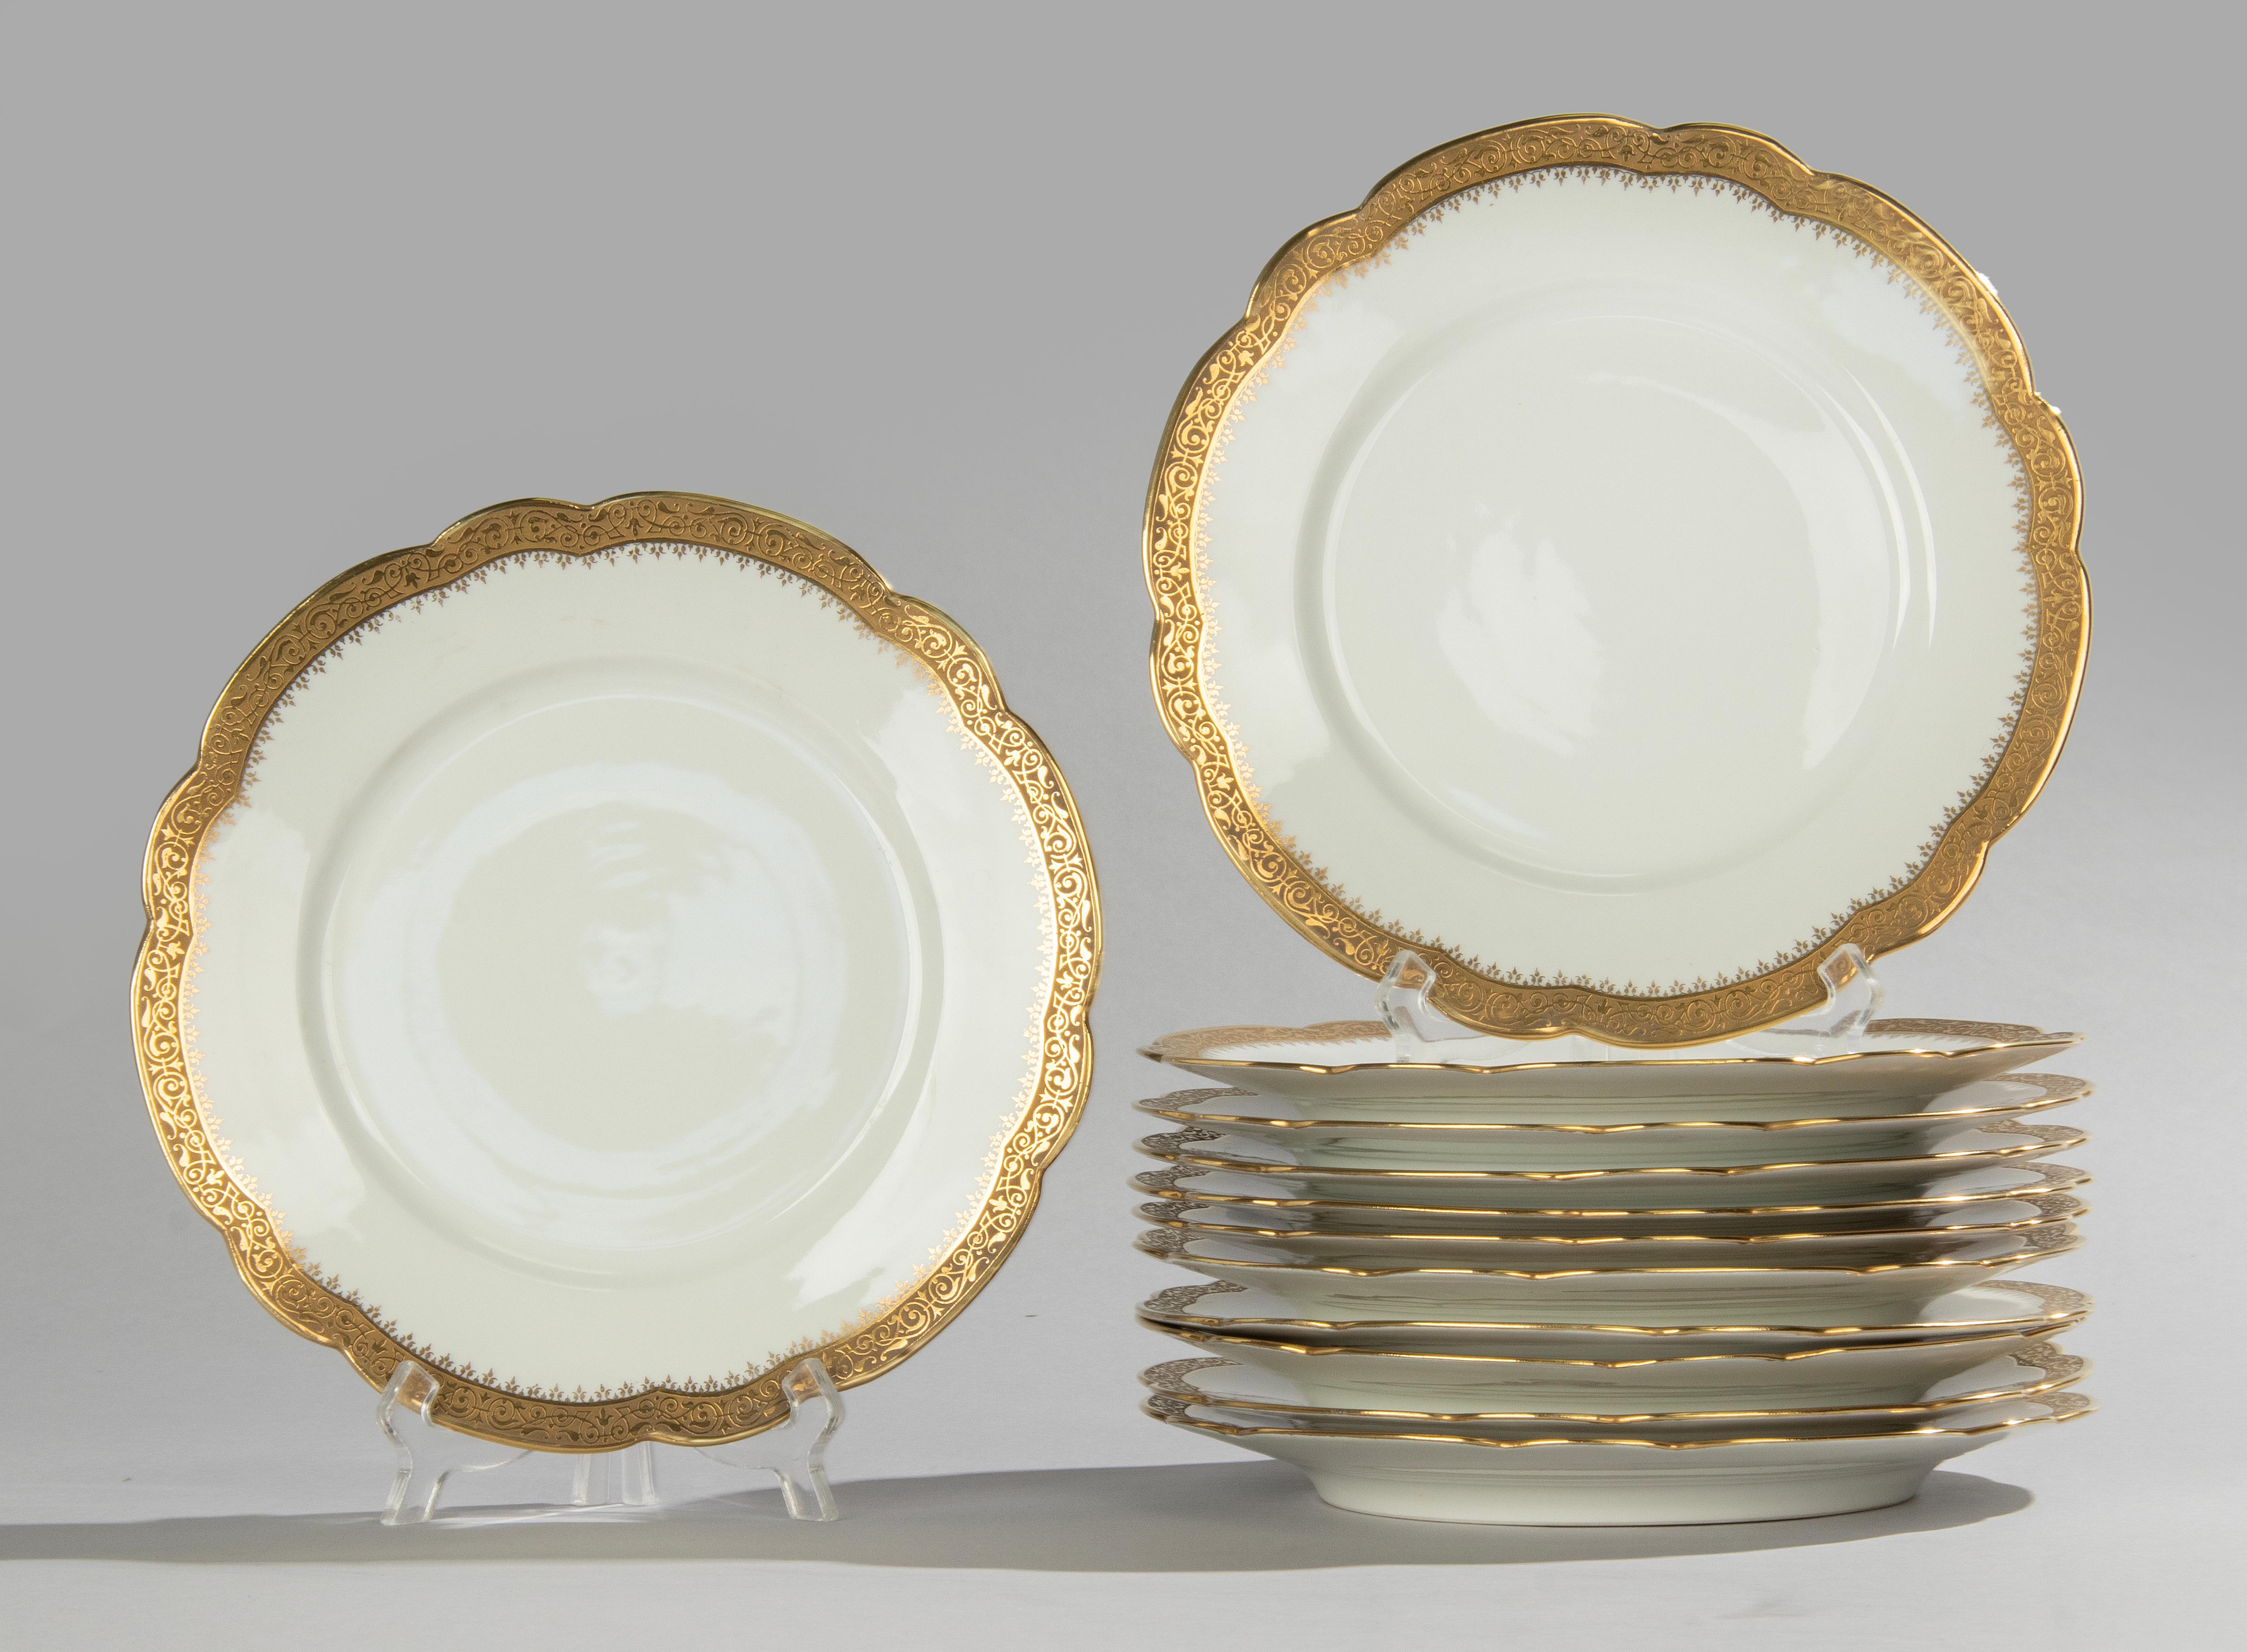 Ein schöner Satz von 12 Porzellantellern, vermutlich von der französischen Marke Limoges. 
Die Teller sind wunderschön mit eingelegten Goldrändern verziert.
Die Platten sind alle mit einer Marke von A. Taillardat et Fils, Paris, versehen. Dies ist